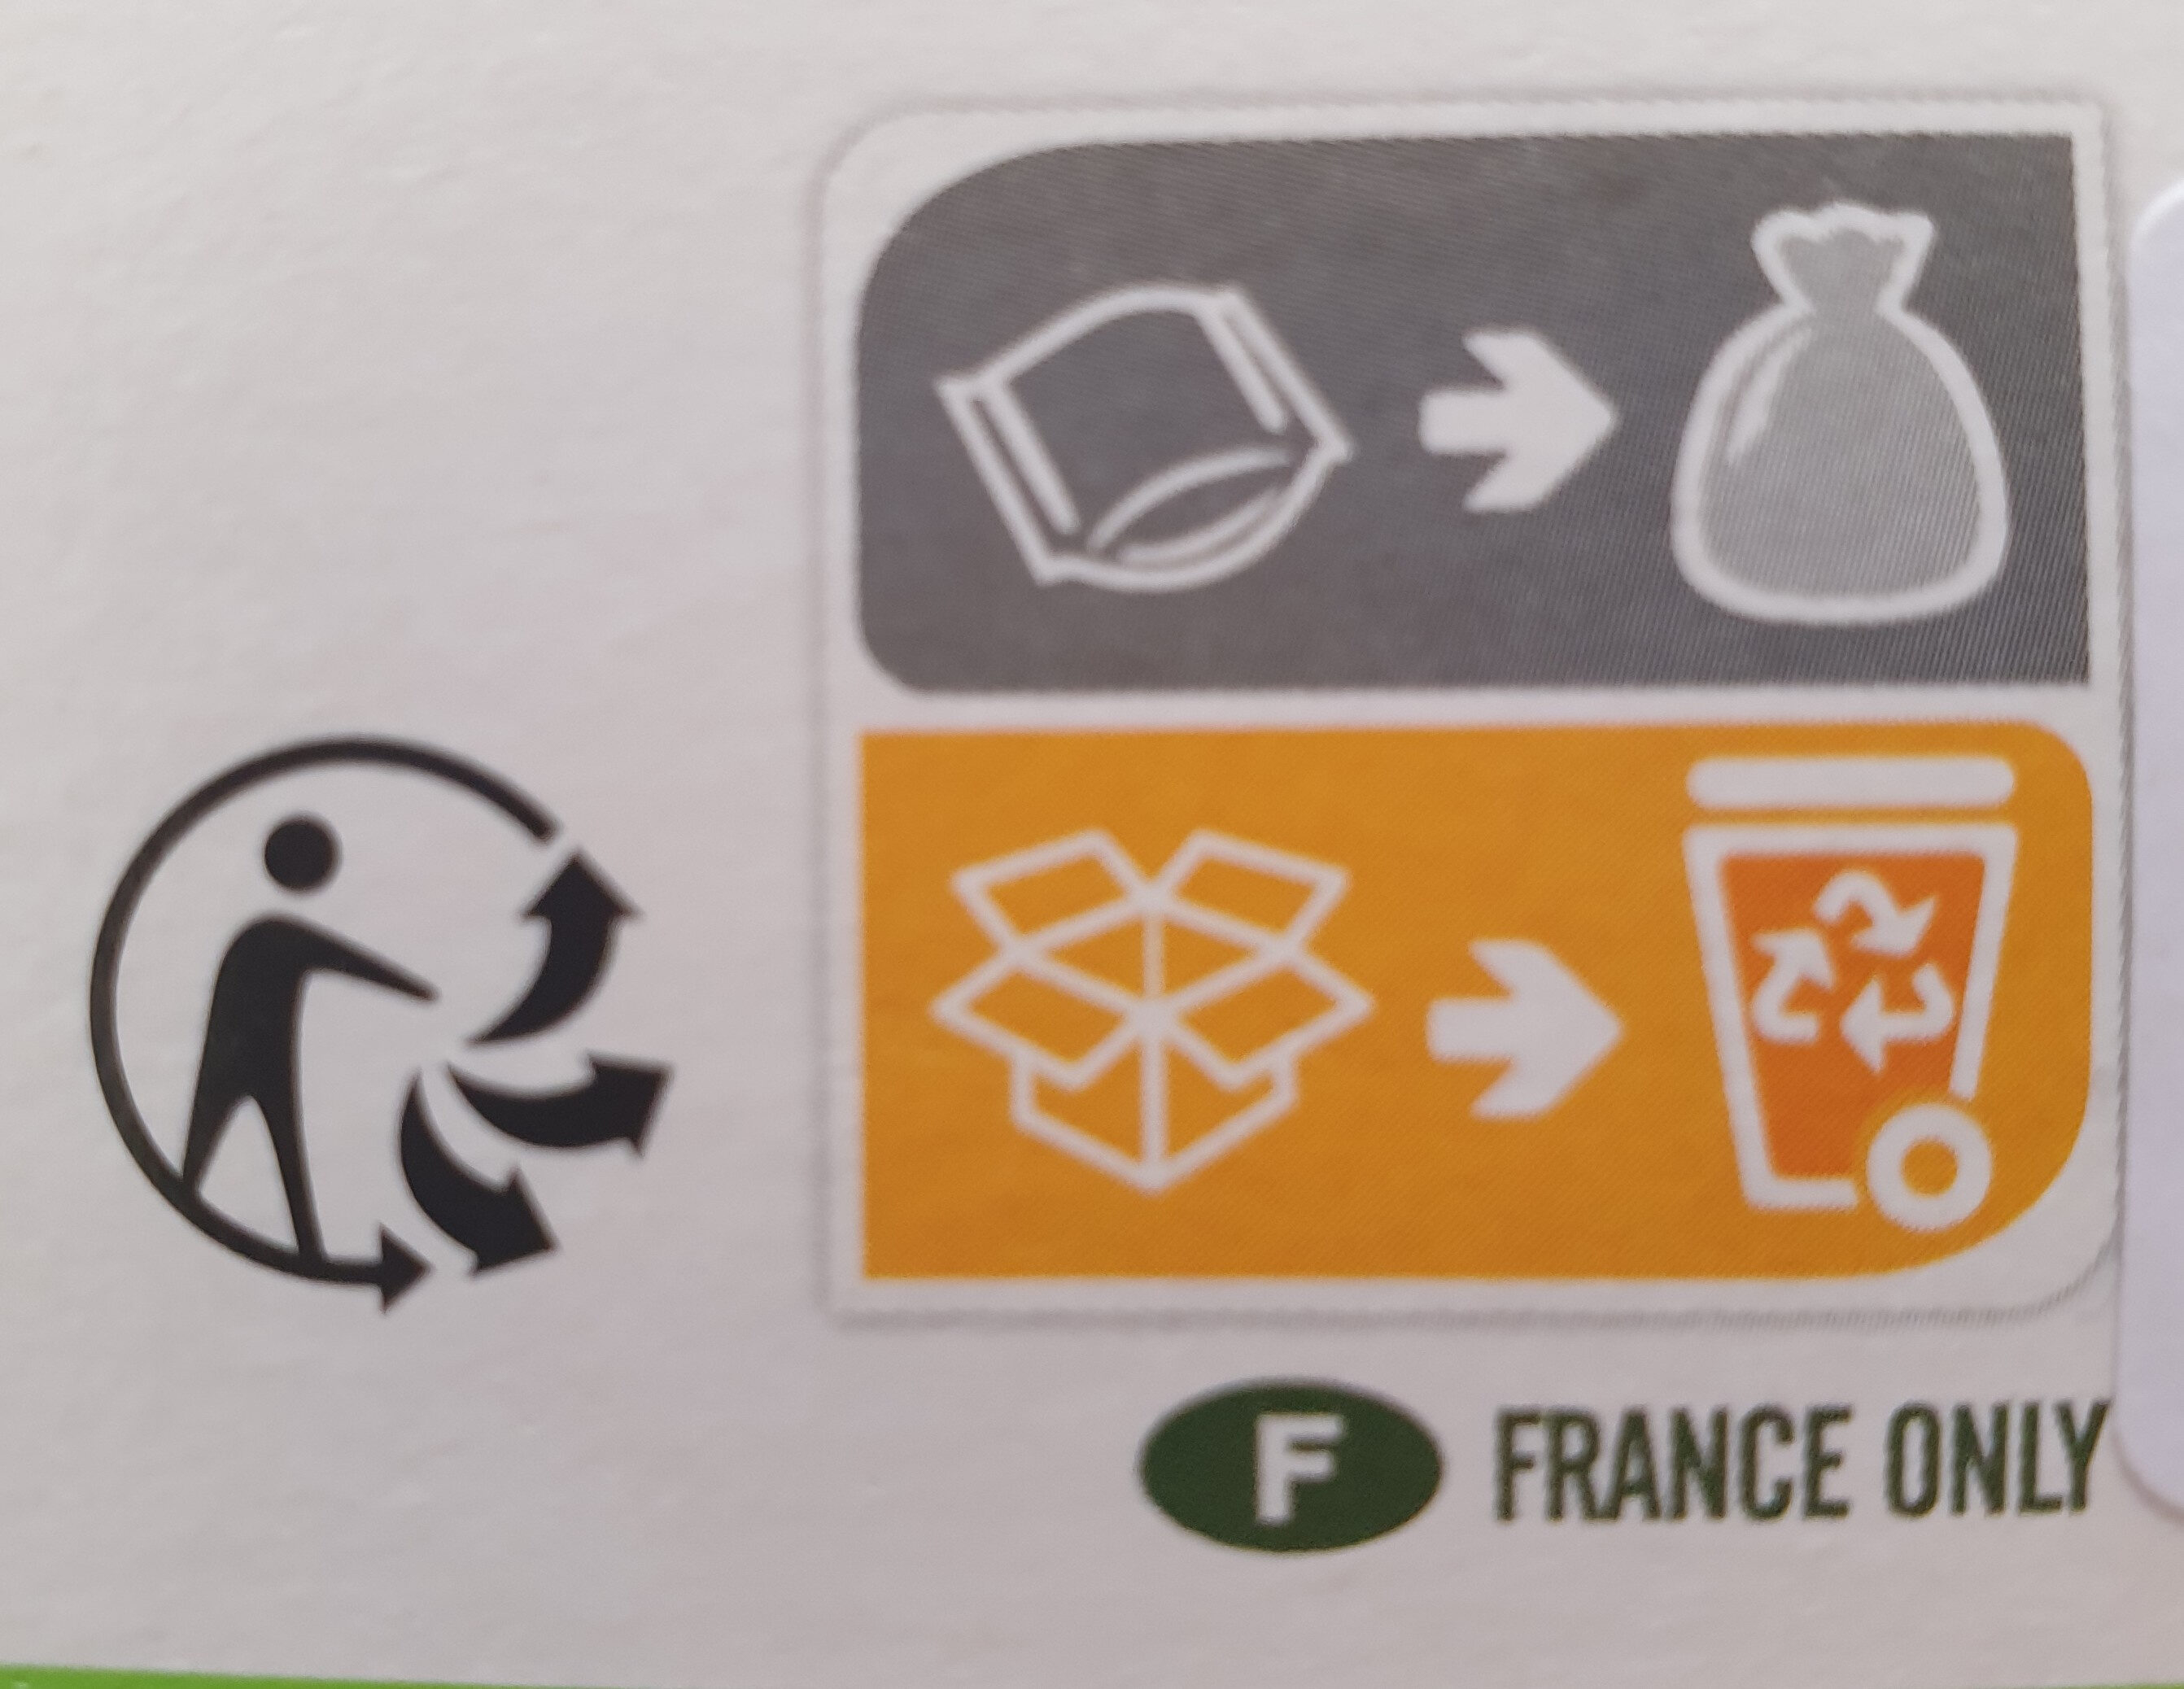 Tartines craquantes au sarrasin - Instruction de recyclage et/ou informations d'emballage - fr